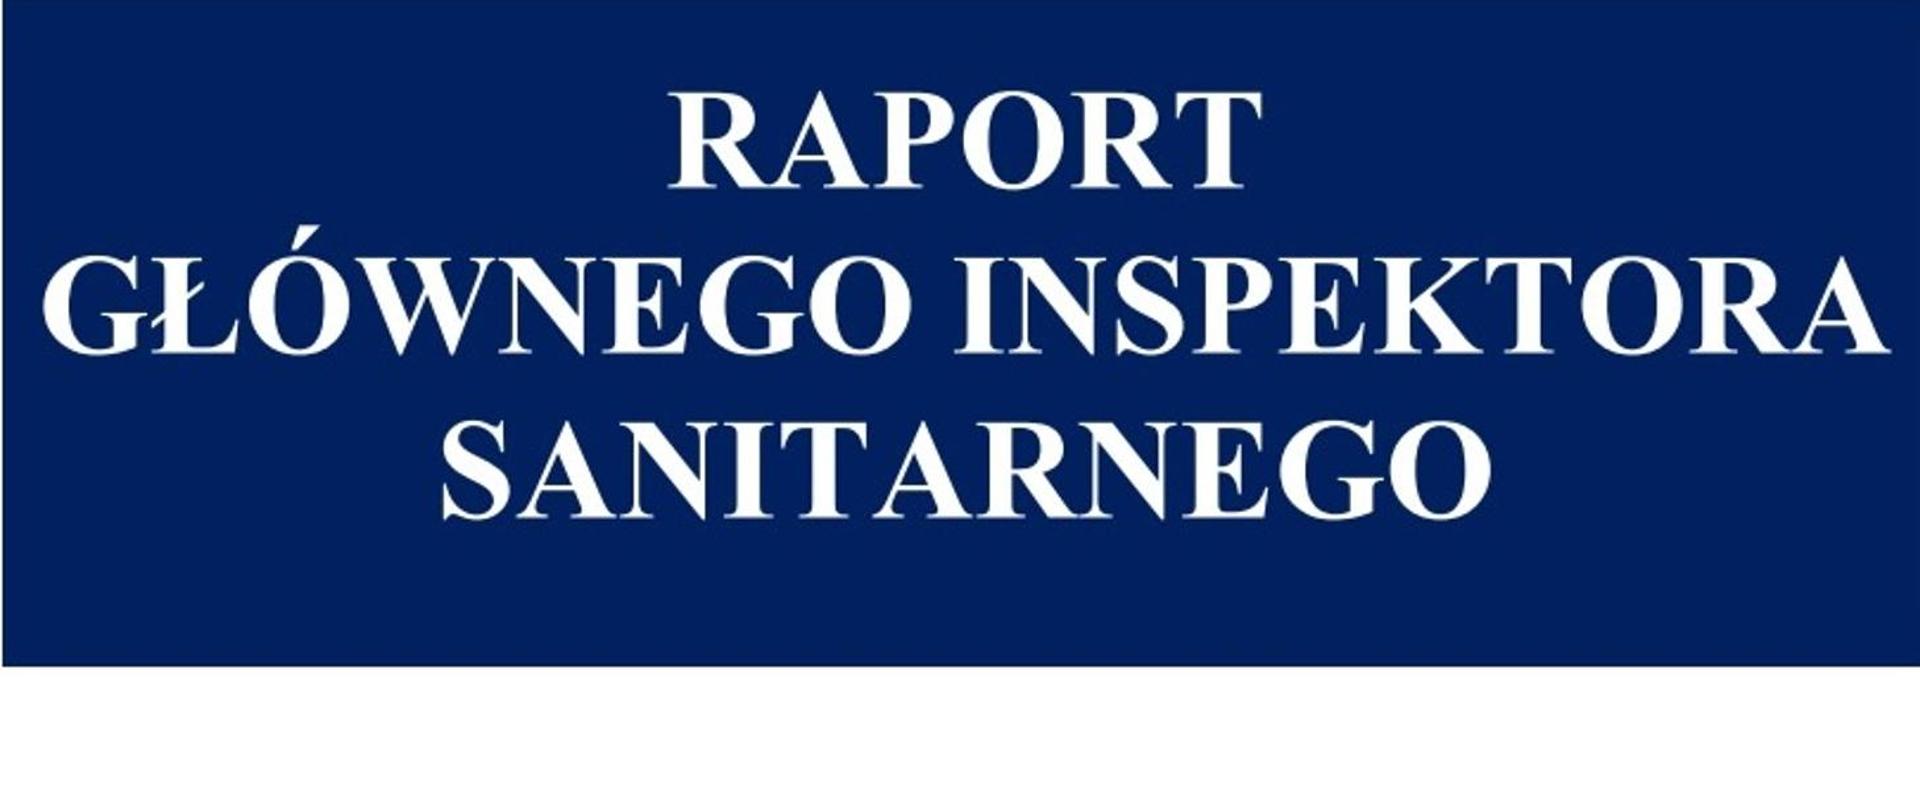 Raport Głównego Inspektora Sanitarnego